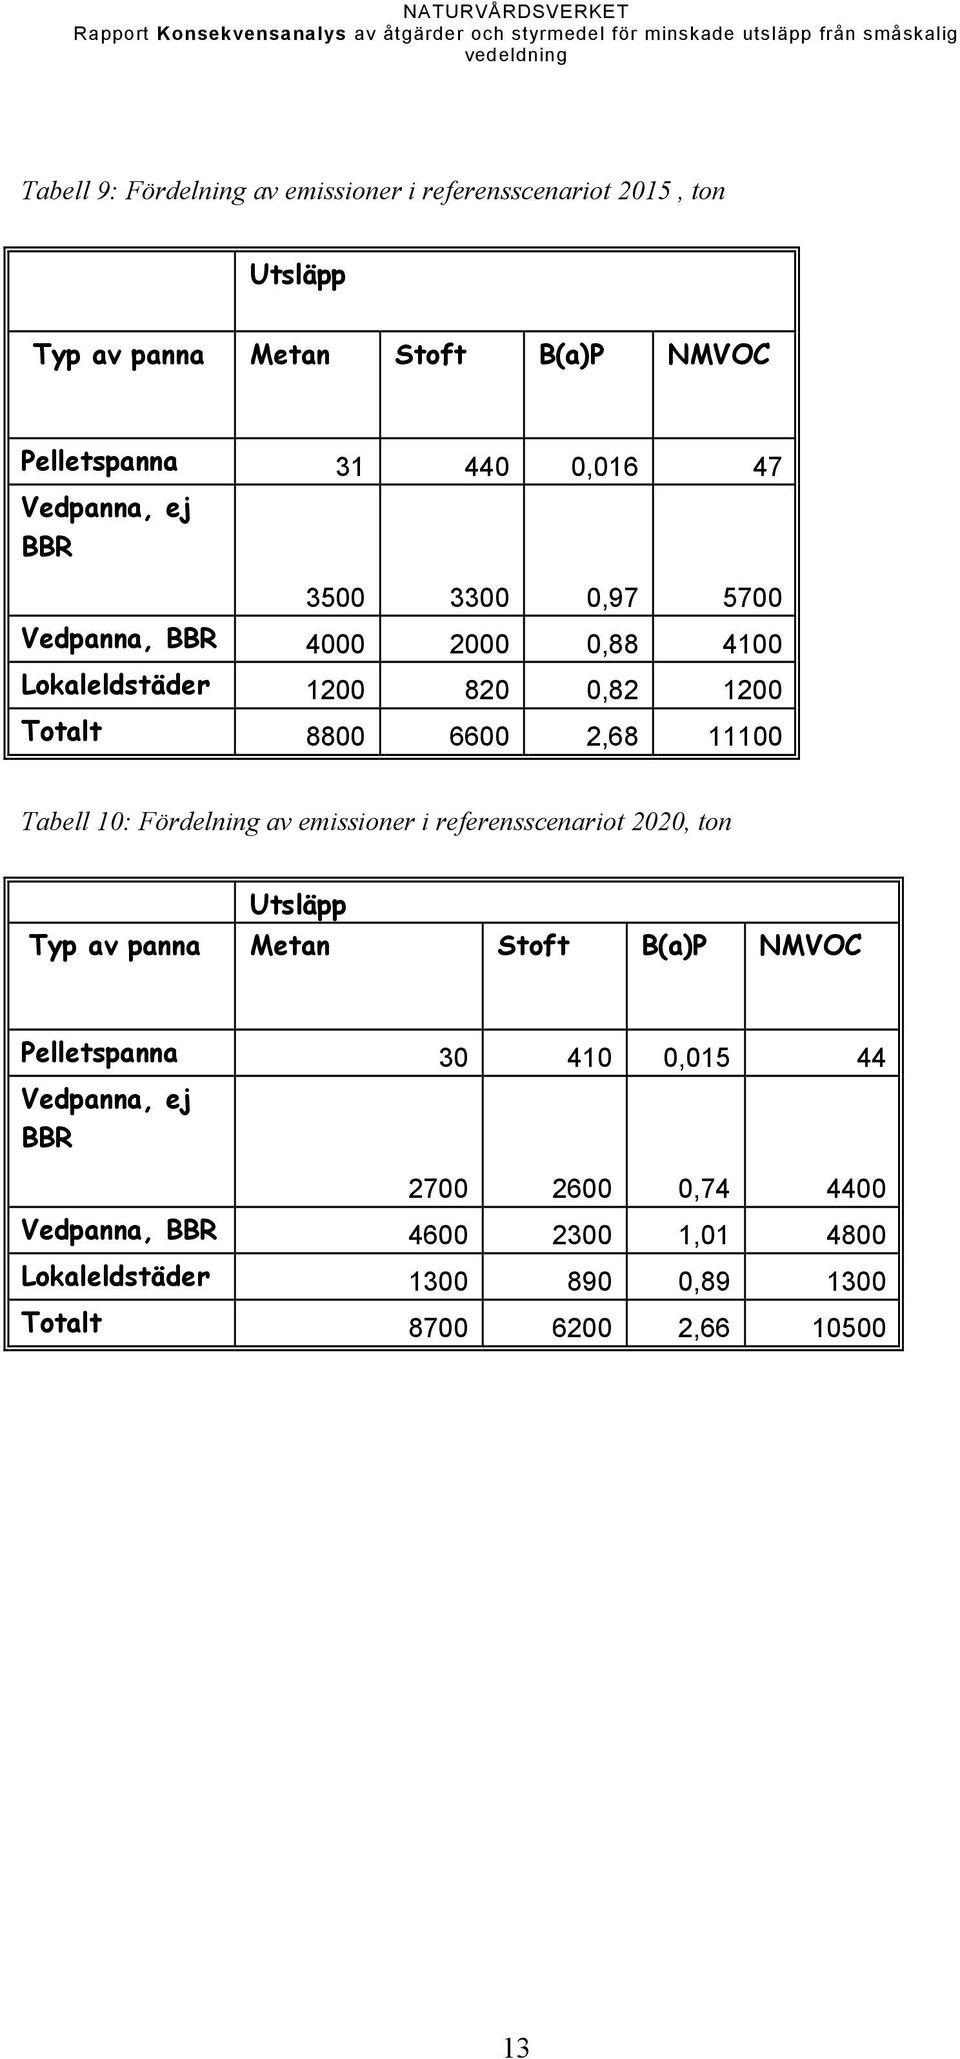 Tabell 10: Fördelning av emissioner i referensscenariot 2020, ton Utsläpp Typ av panna Metan Stoft B(a)P NMVOC Pelletspanna 30 410 0,015